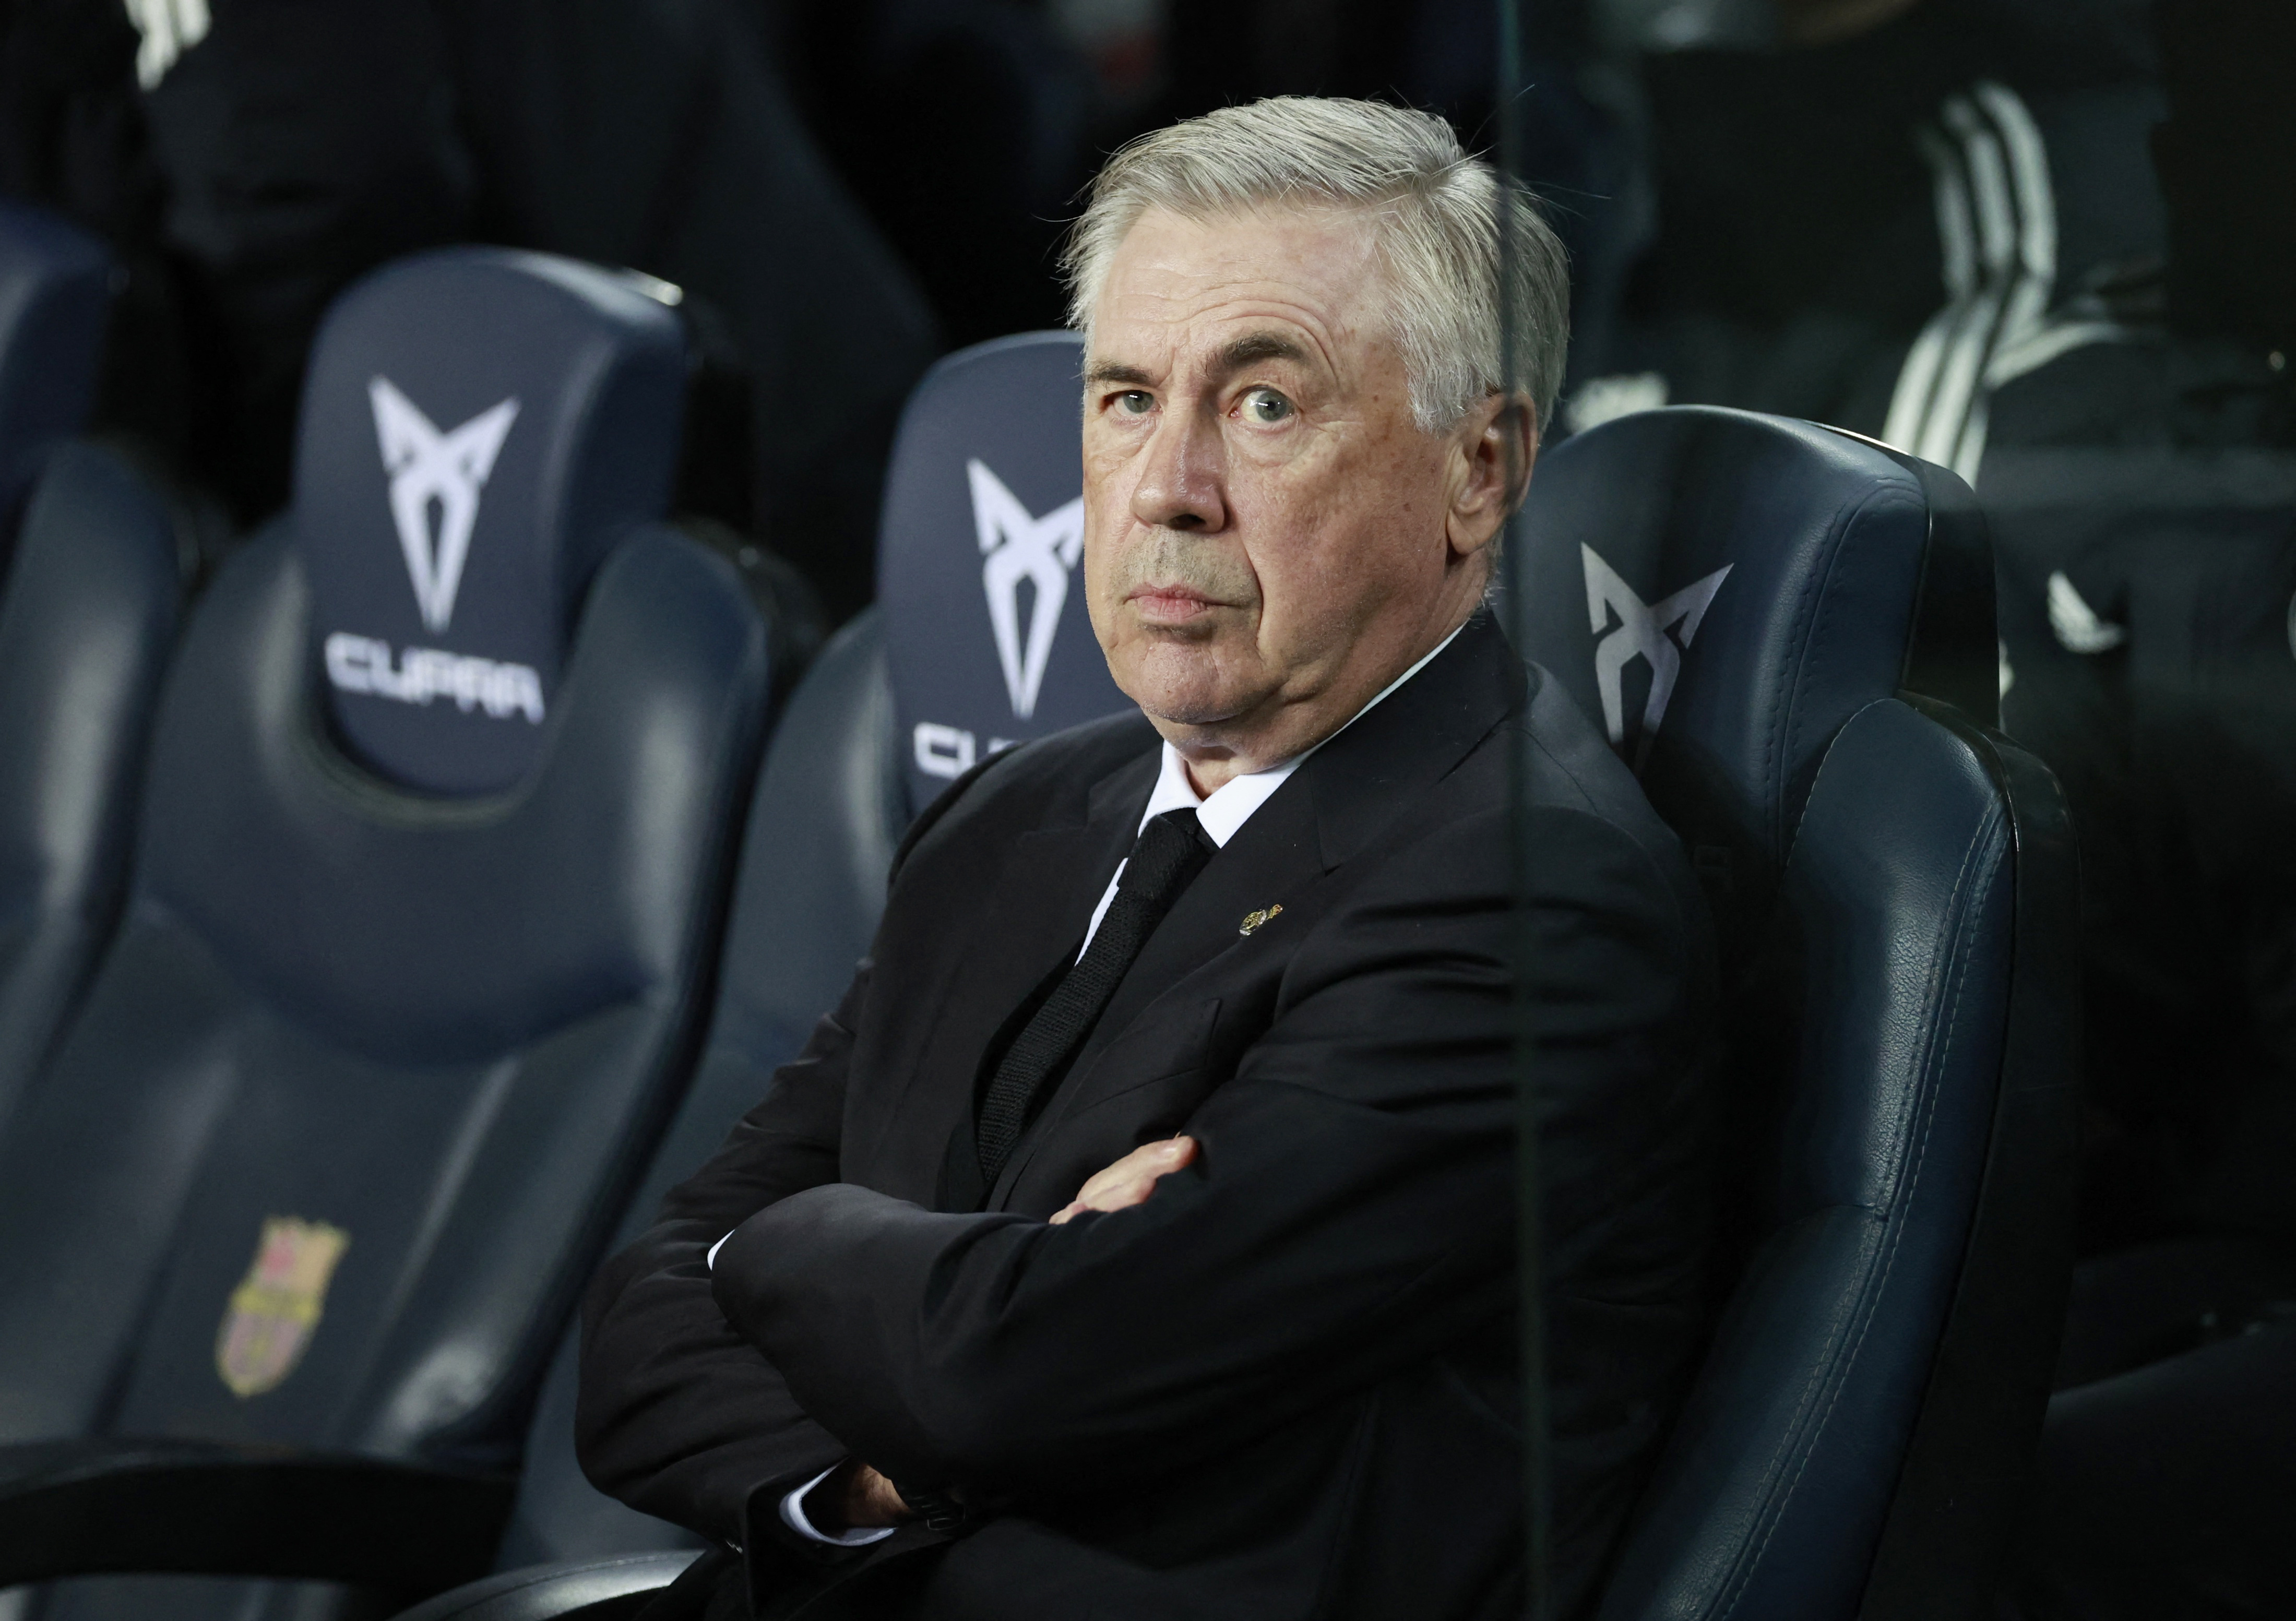 El futuro de Carlo Ancelotti podría estar en Brasil. Foto: REUTERS/Juan Medina